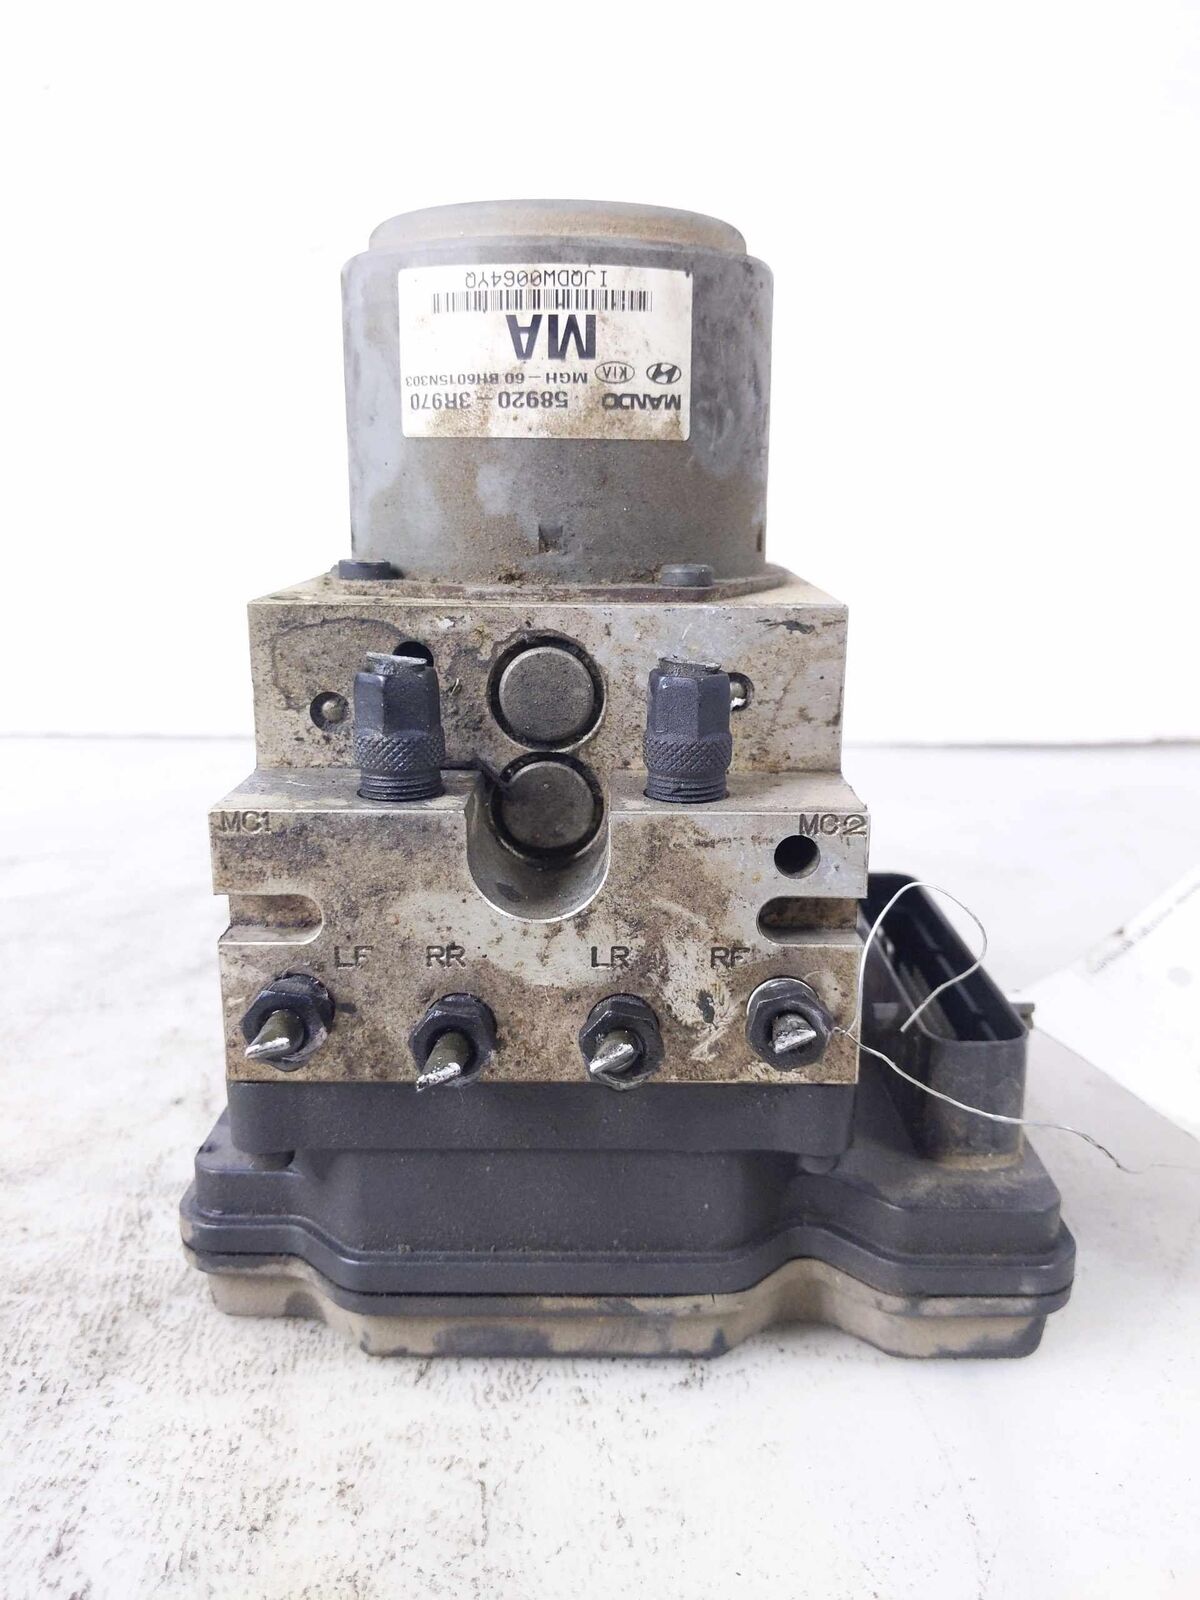 ABS Anti Lock Brake Parts Pump Module Unit OEM KIA CADENZA 3.3L 14 15 16